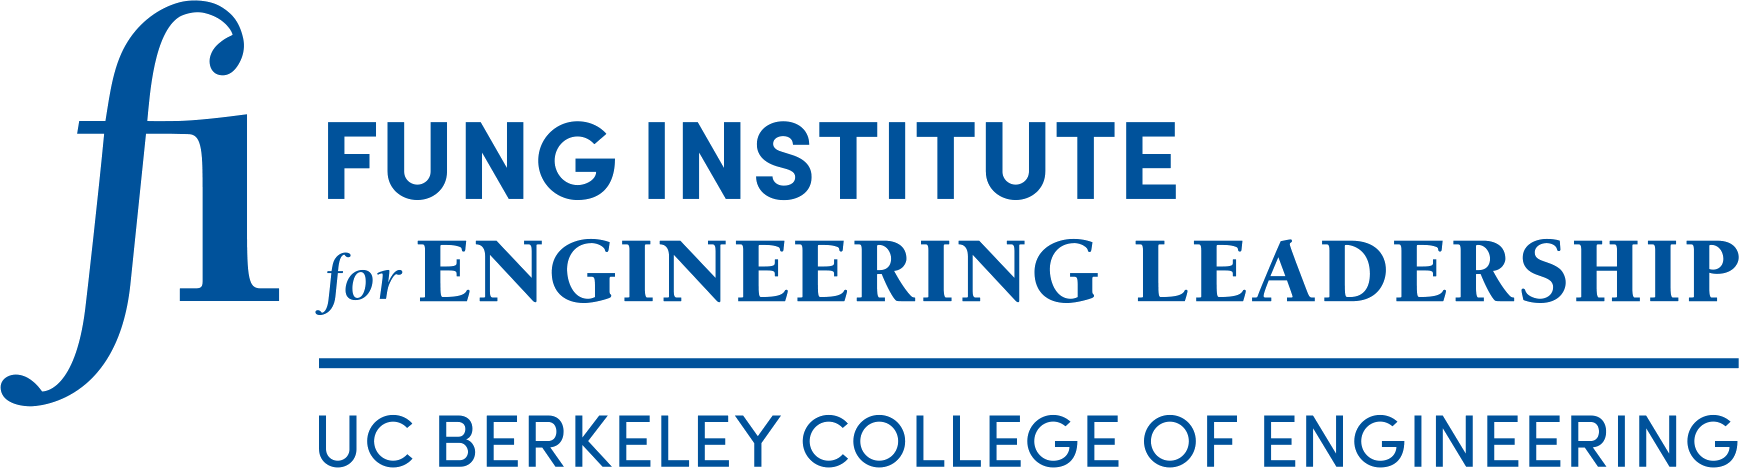 Photo of Fung Institute logo